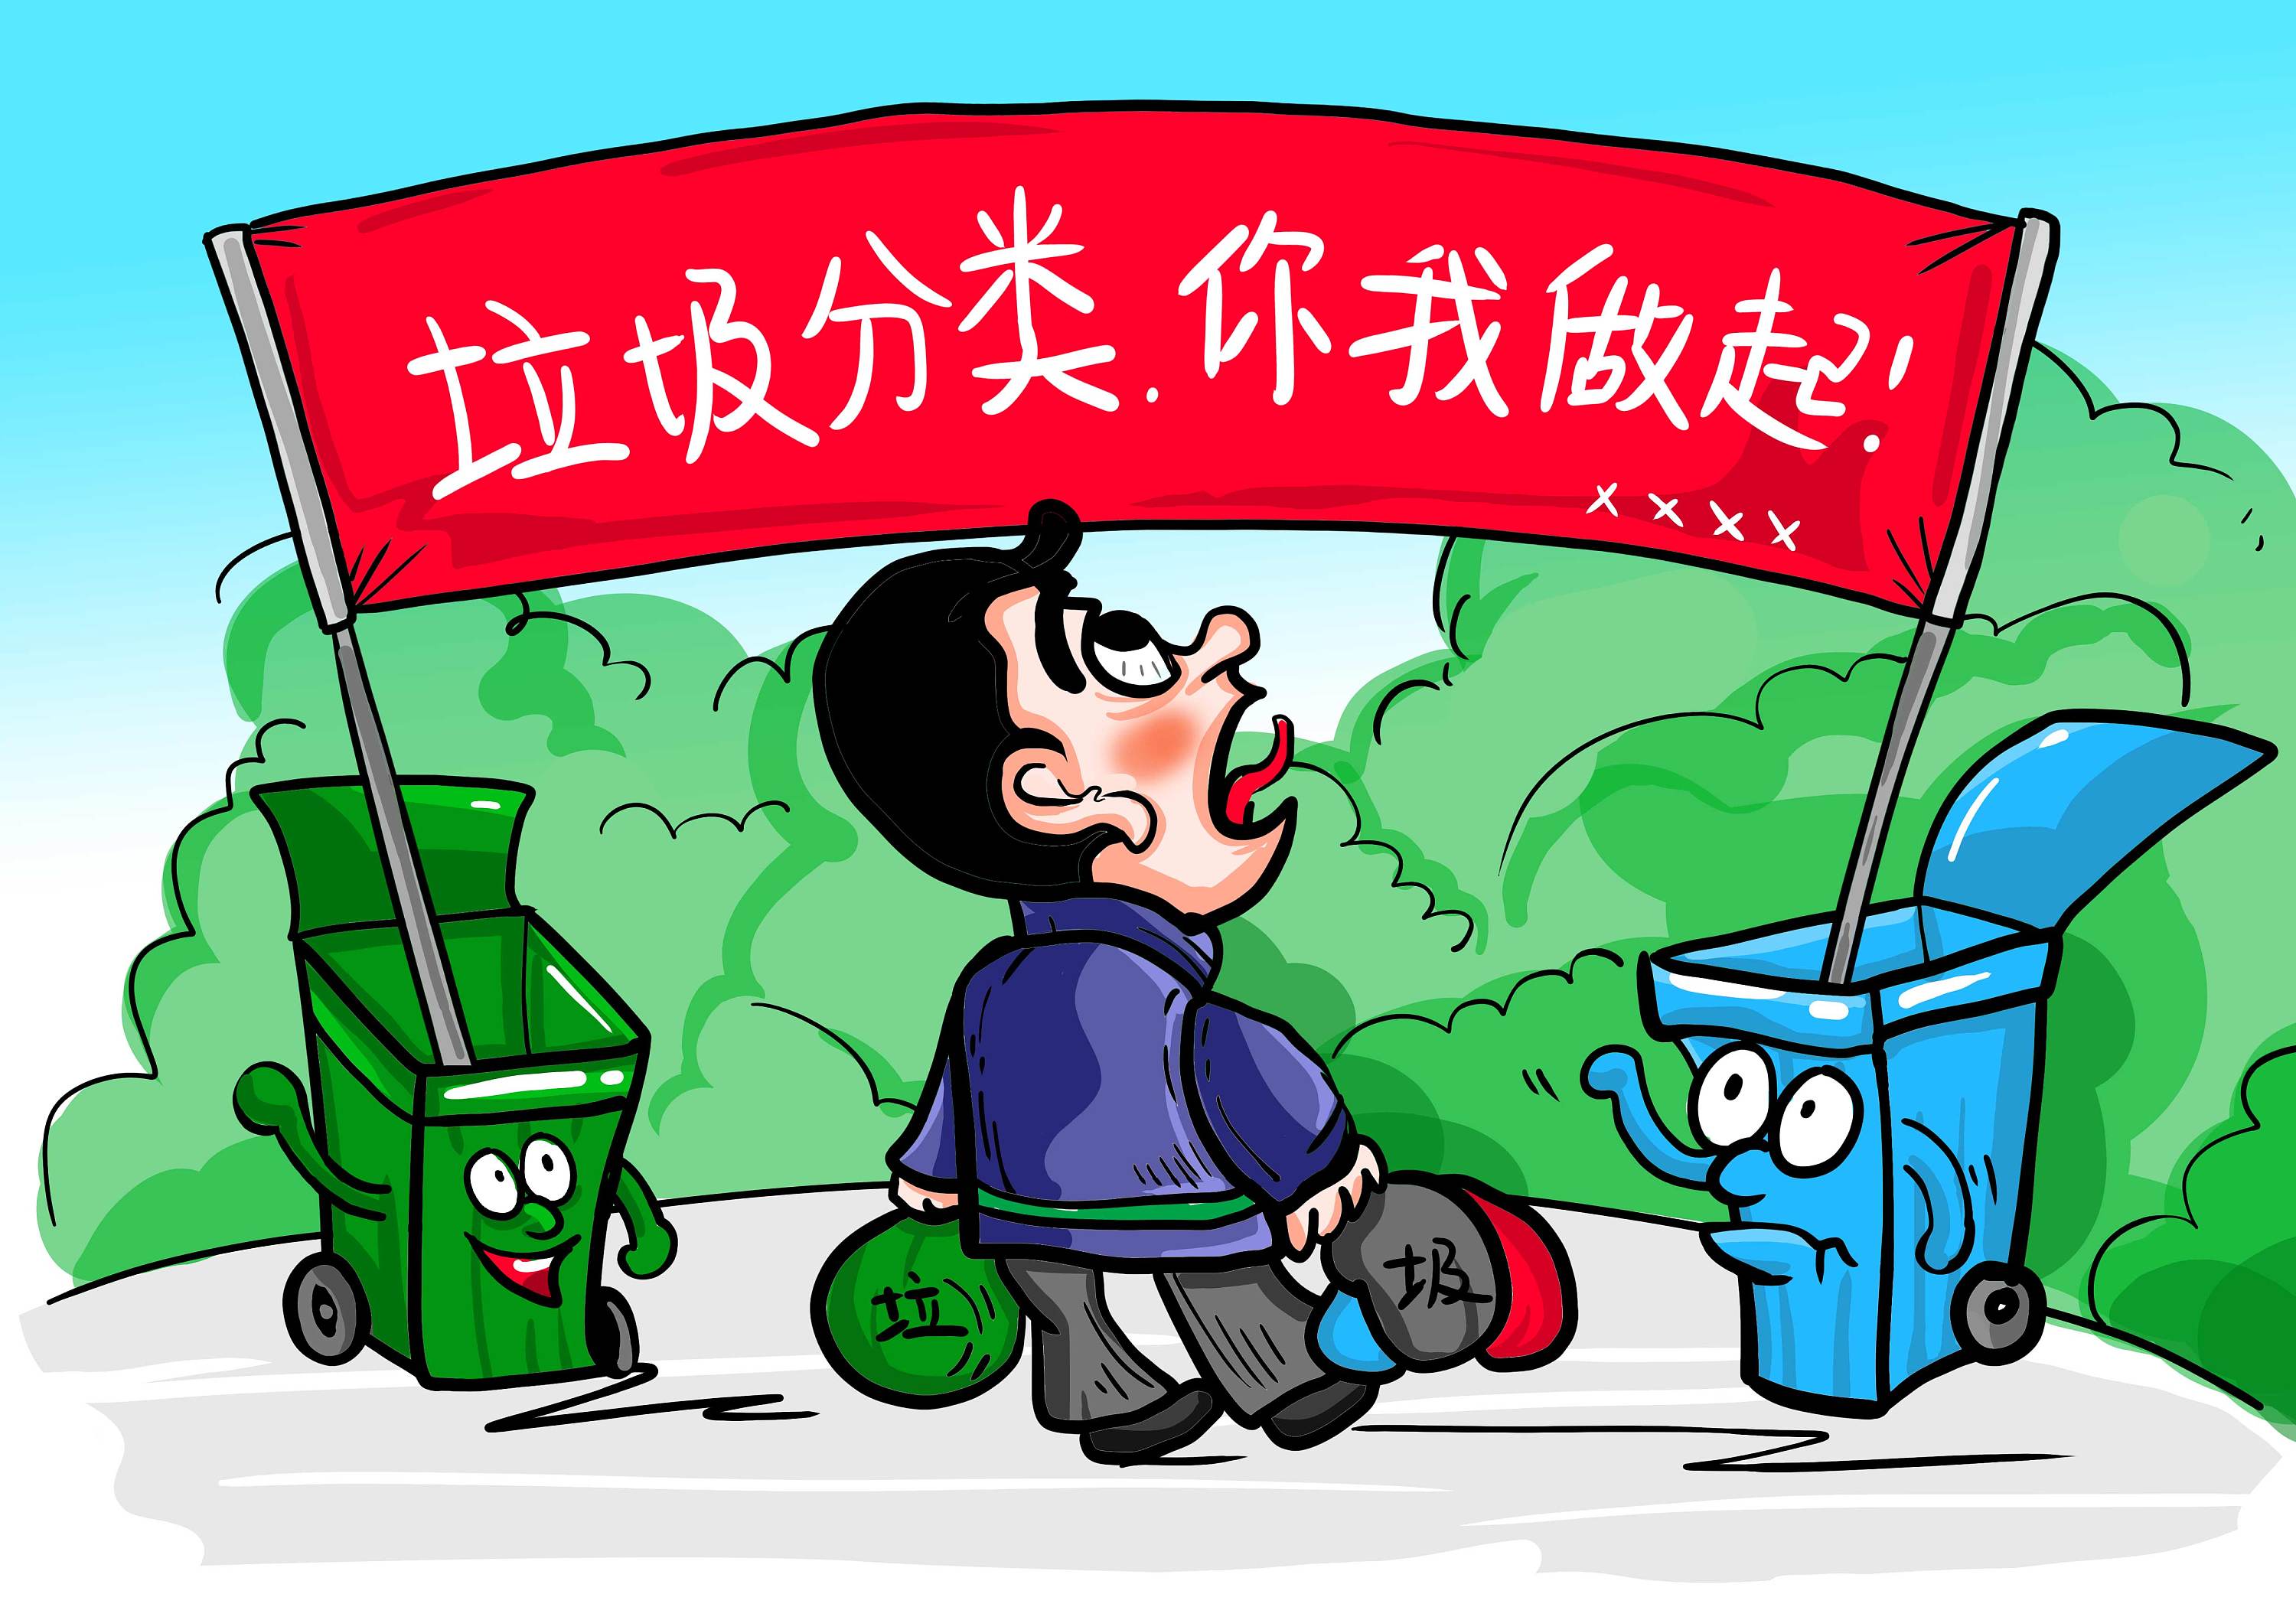 苏州：垃圾分类主题绘画 倡导绿色环保理念-搜狐大视野-搜狐新闻